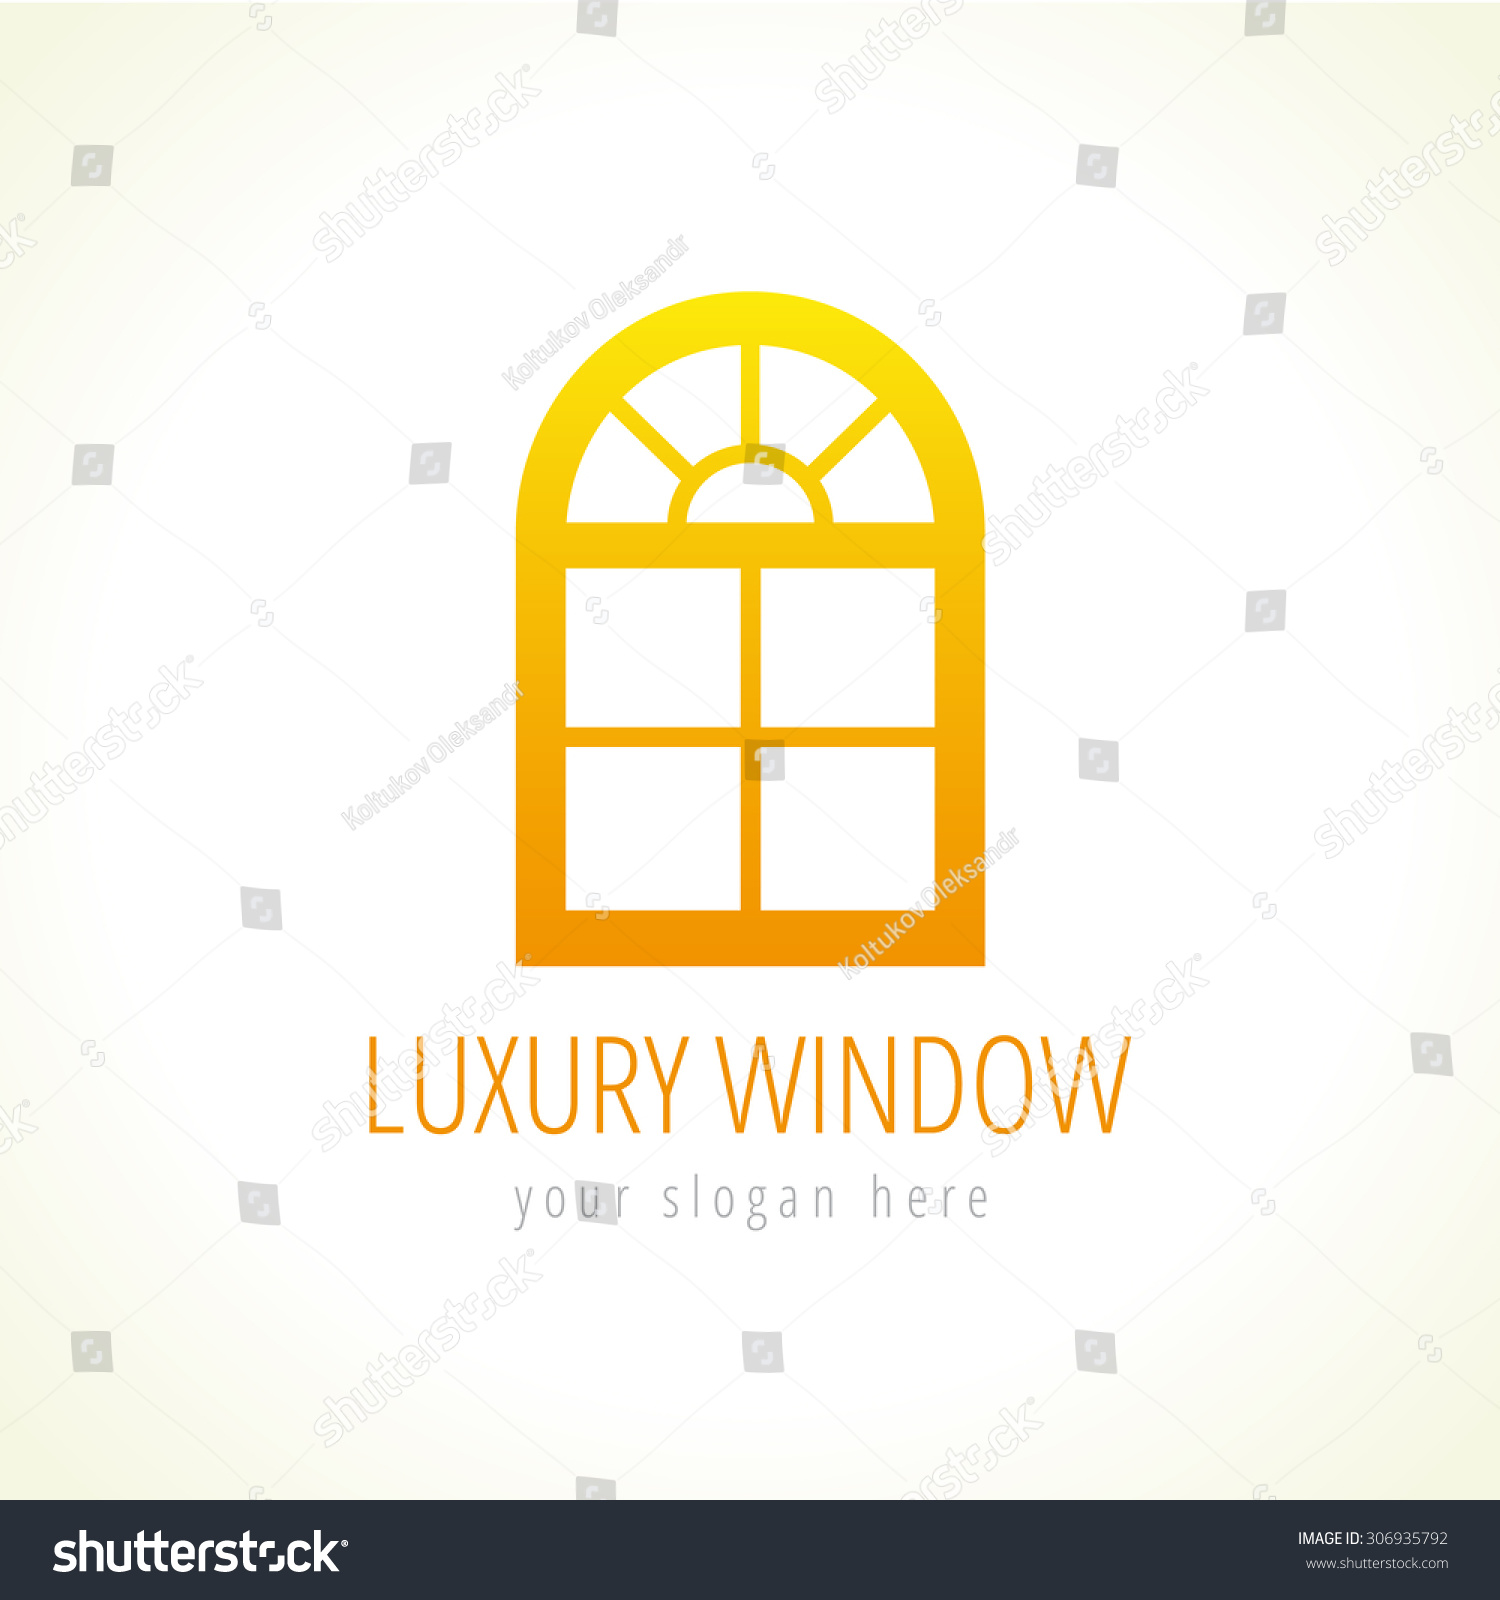 Arc Windowsのベクター画像ロゴ 抽象的なテンプレート アーチ型の装飾窓に建築会社を建設する金色の看板 豪華な窓やドアを従来のスタイルで購入または更新します のベクター画像素材 ロイヤリティフリー